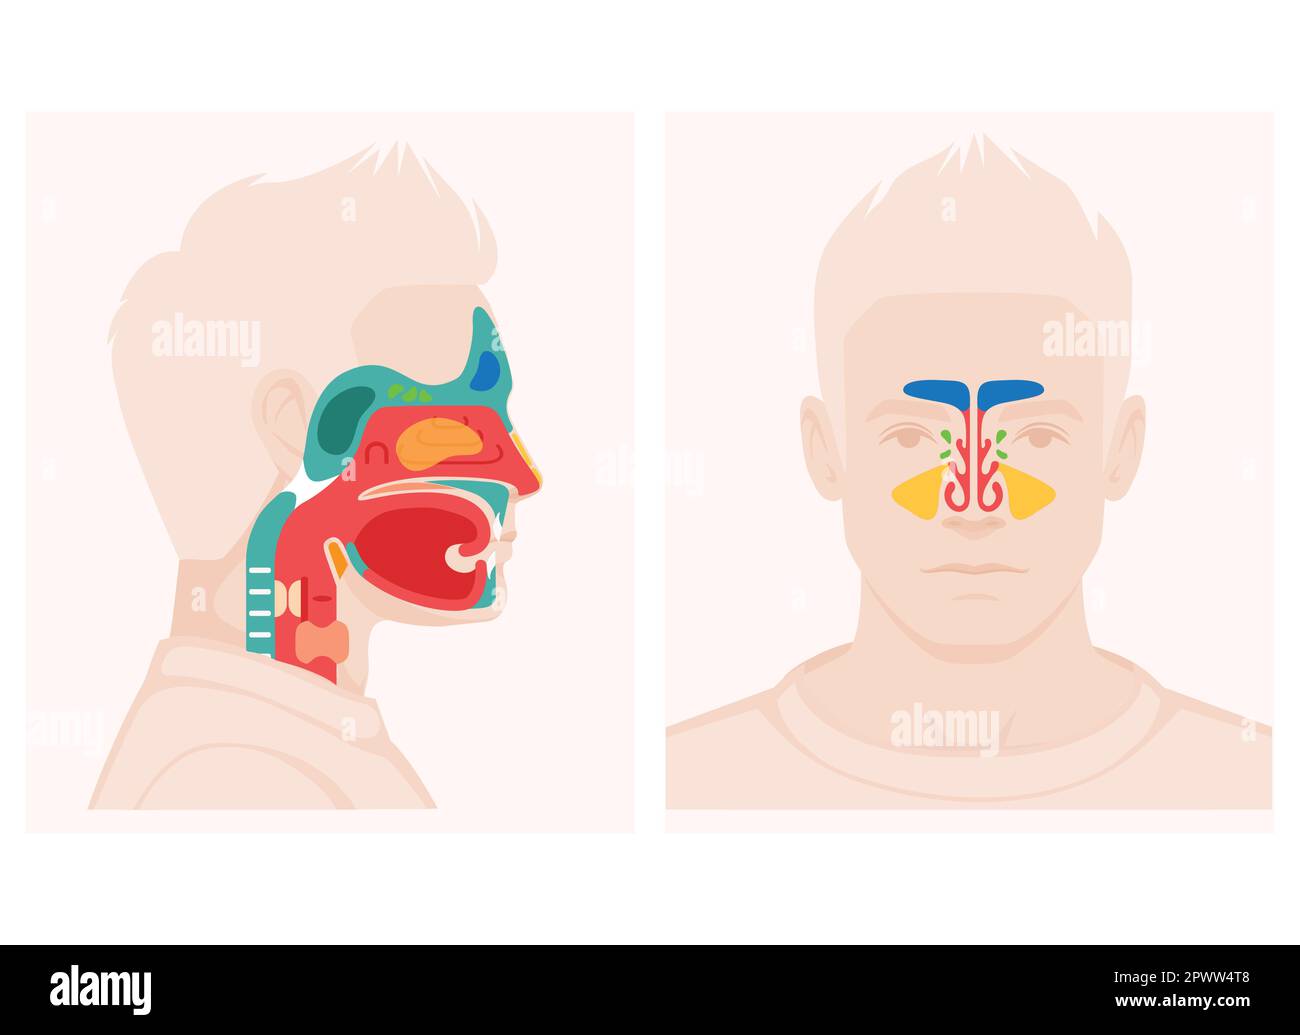 Schéma de coupe transversale de l'anatomie du nez montrant une illustration vectorielle plate des éléments des sinus paranasaux du palais mou Illustration de Vecteur